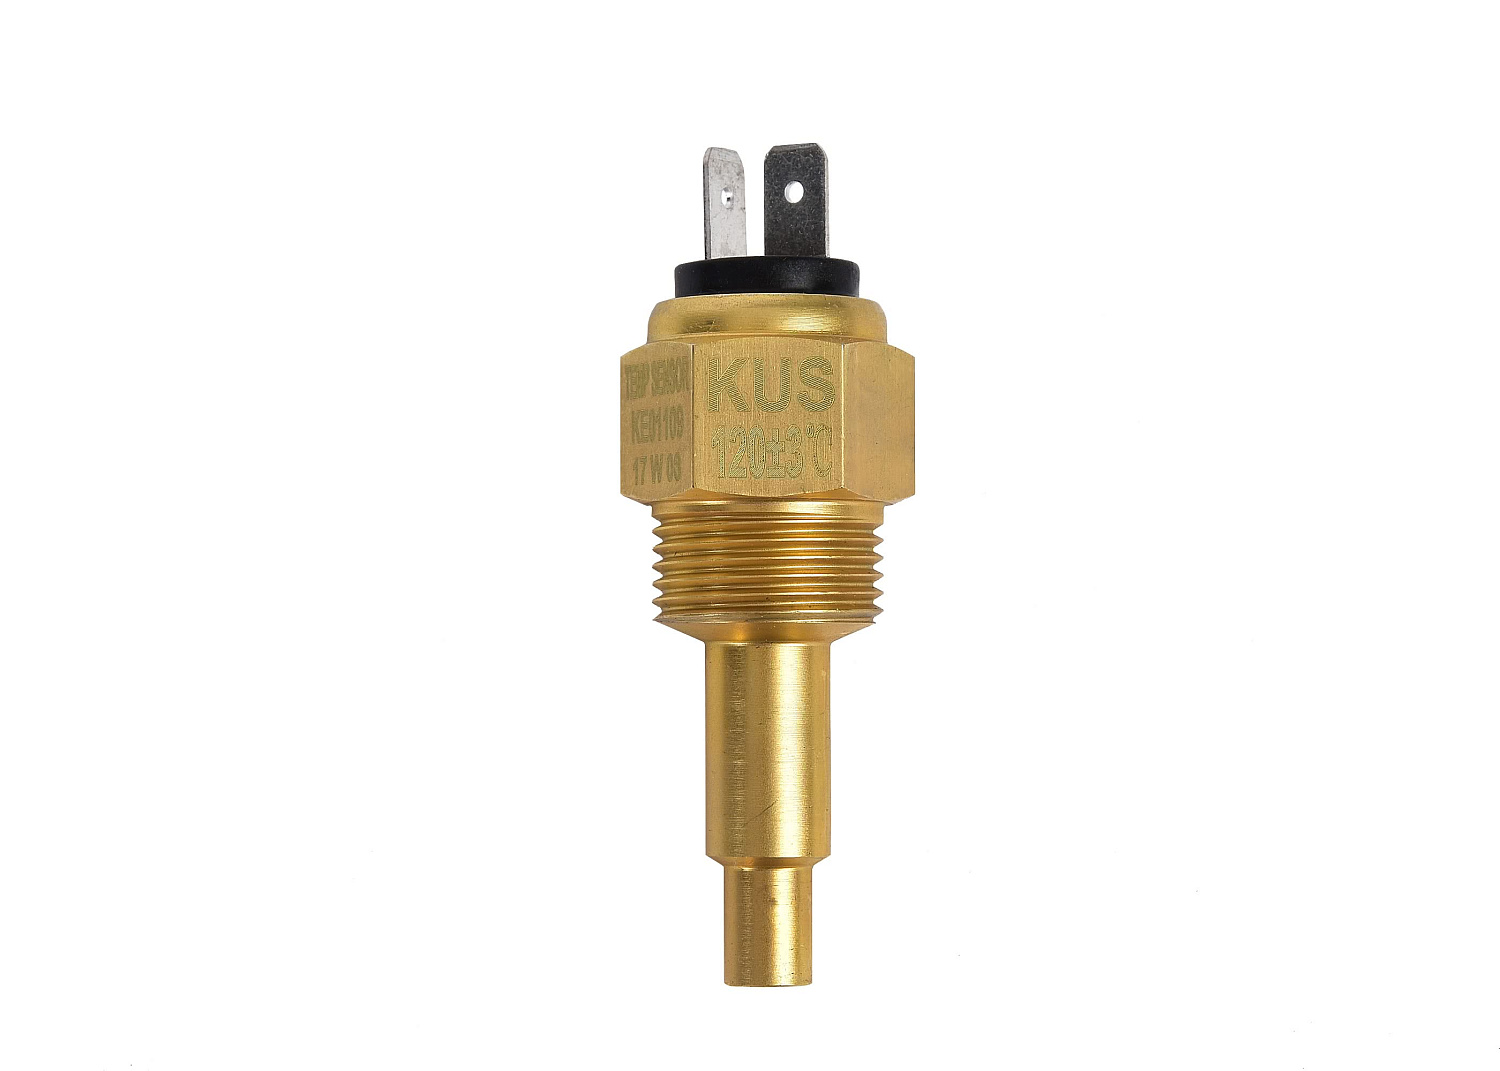 KUS Water Temperature Sensor